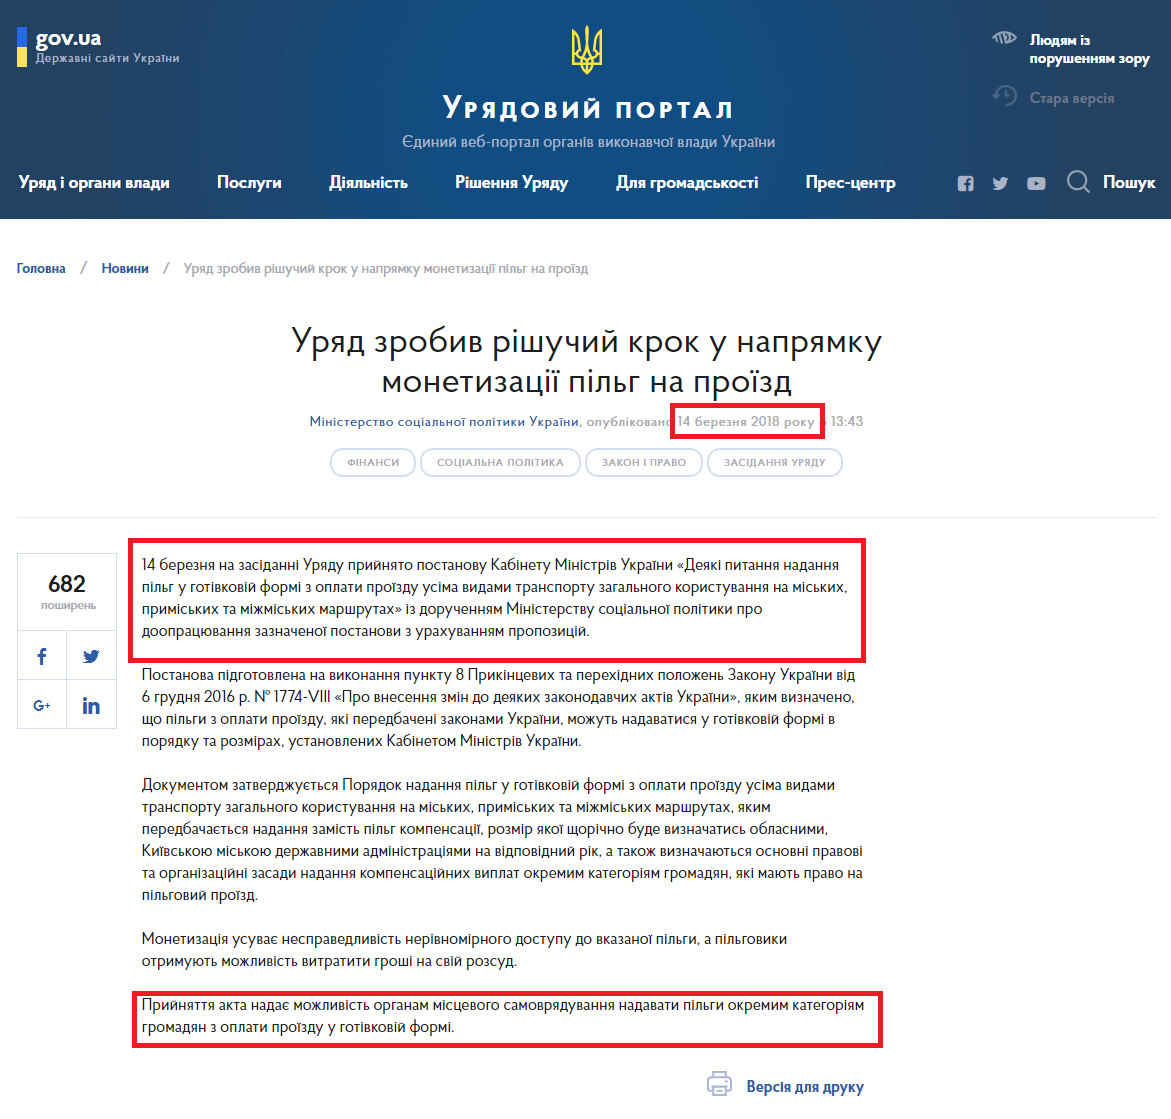 https://www.kmu.gov.ua/ua/news/uryad-zrobiv-rishuchij-krok-u-napryamku-monetizaciyi-pilg-na-proyizd